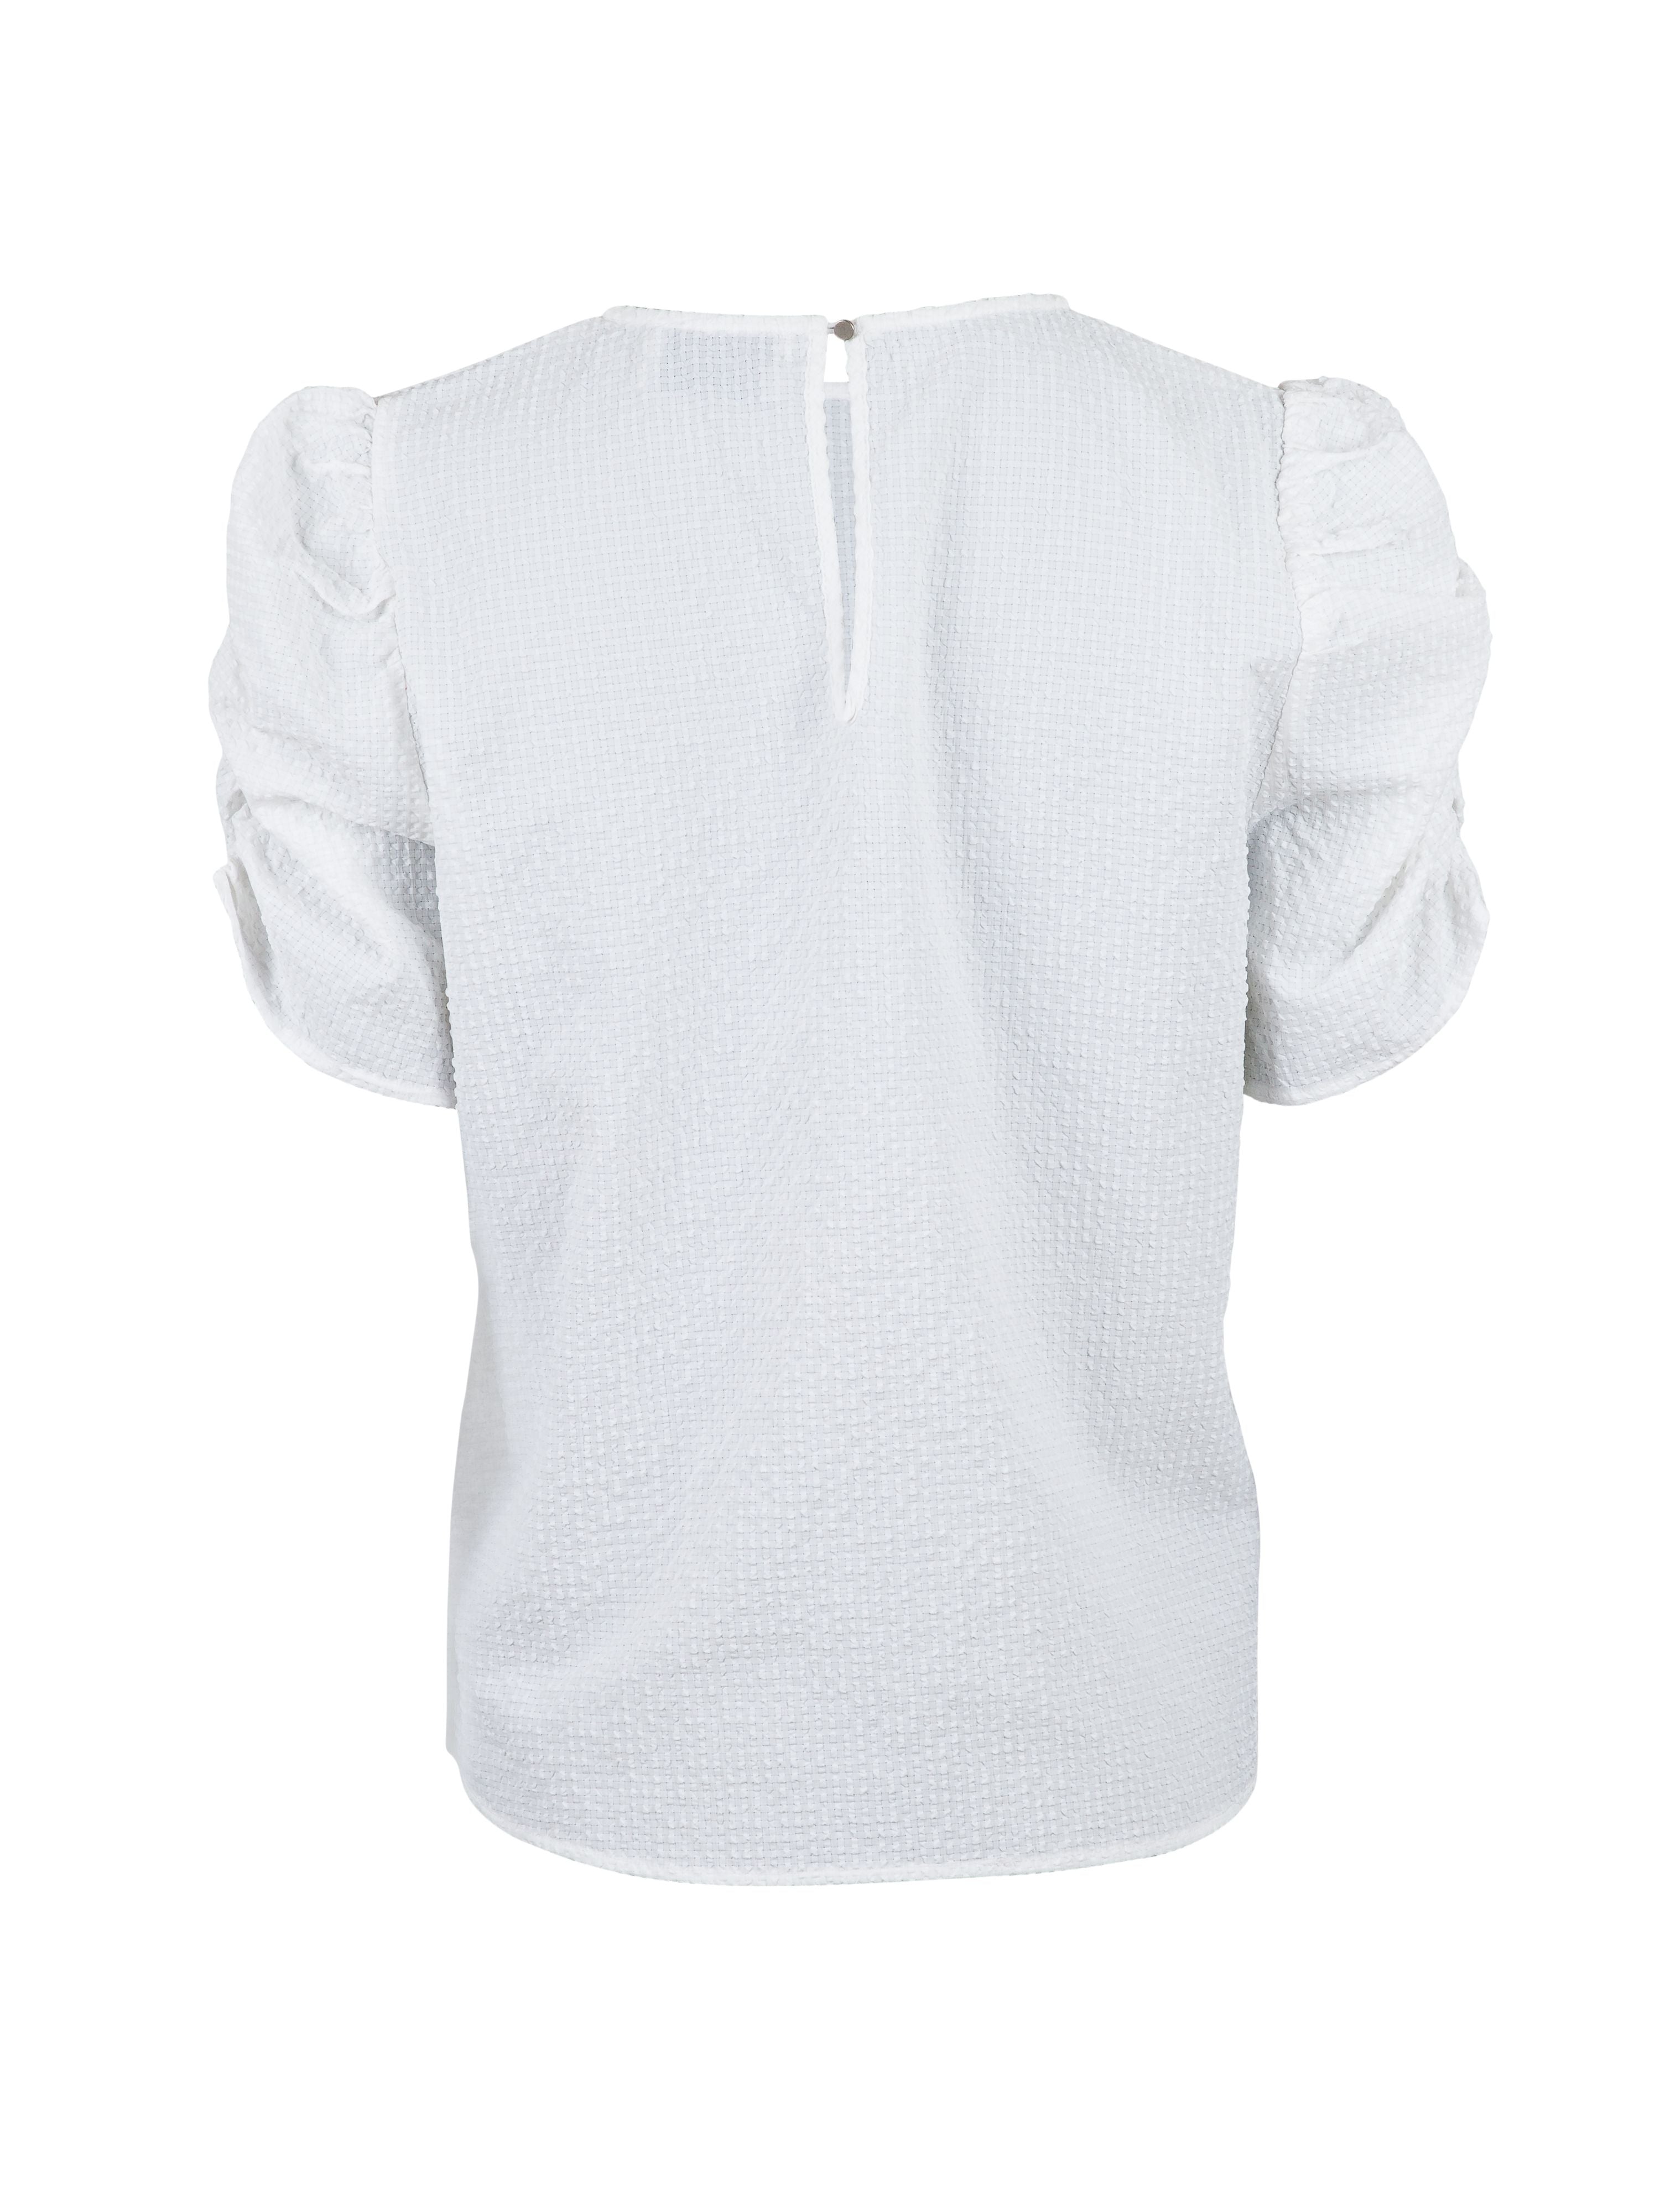 Delta Tee - White - Neo Noir - T-skjorter & Topper - VILLOID.no